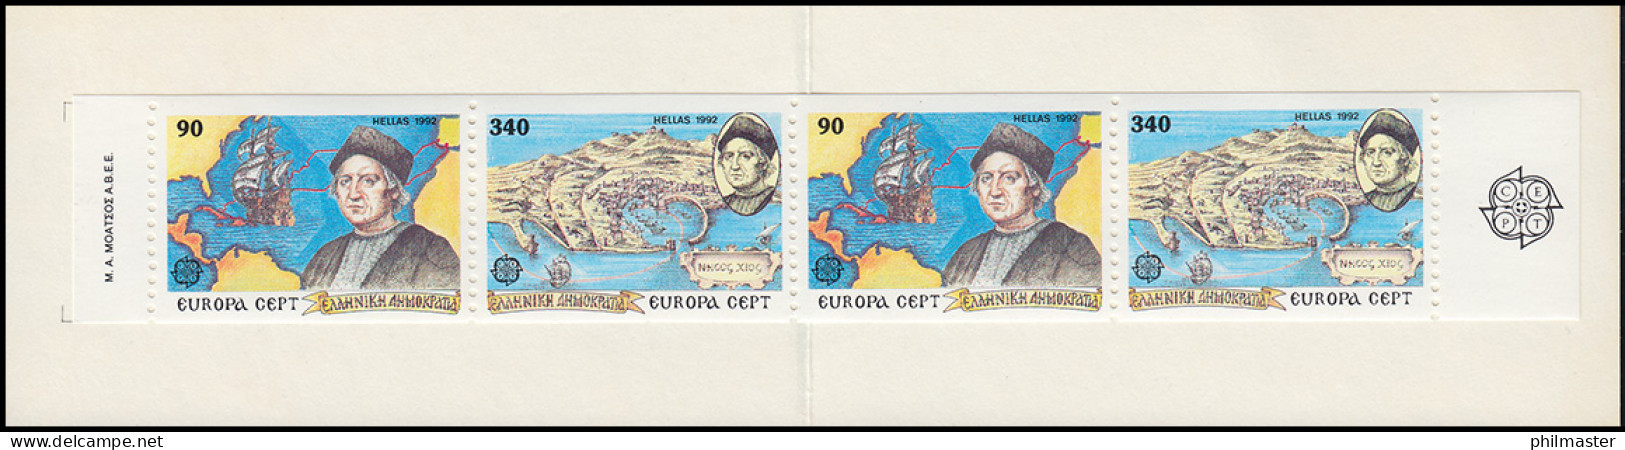 Griechenland Markenheftchen 15 Europa 1992, Postfrisch ** / MNH - Markenheftchen